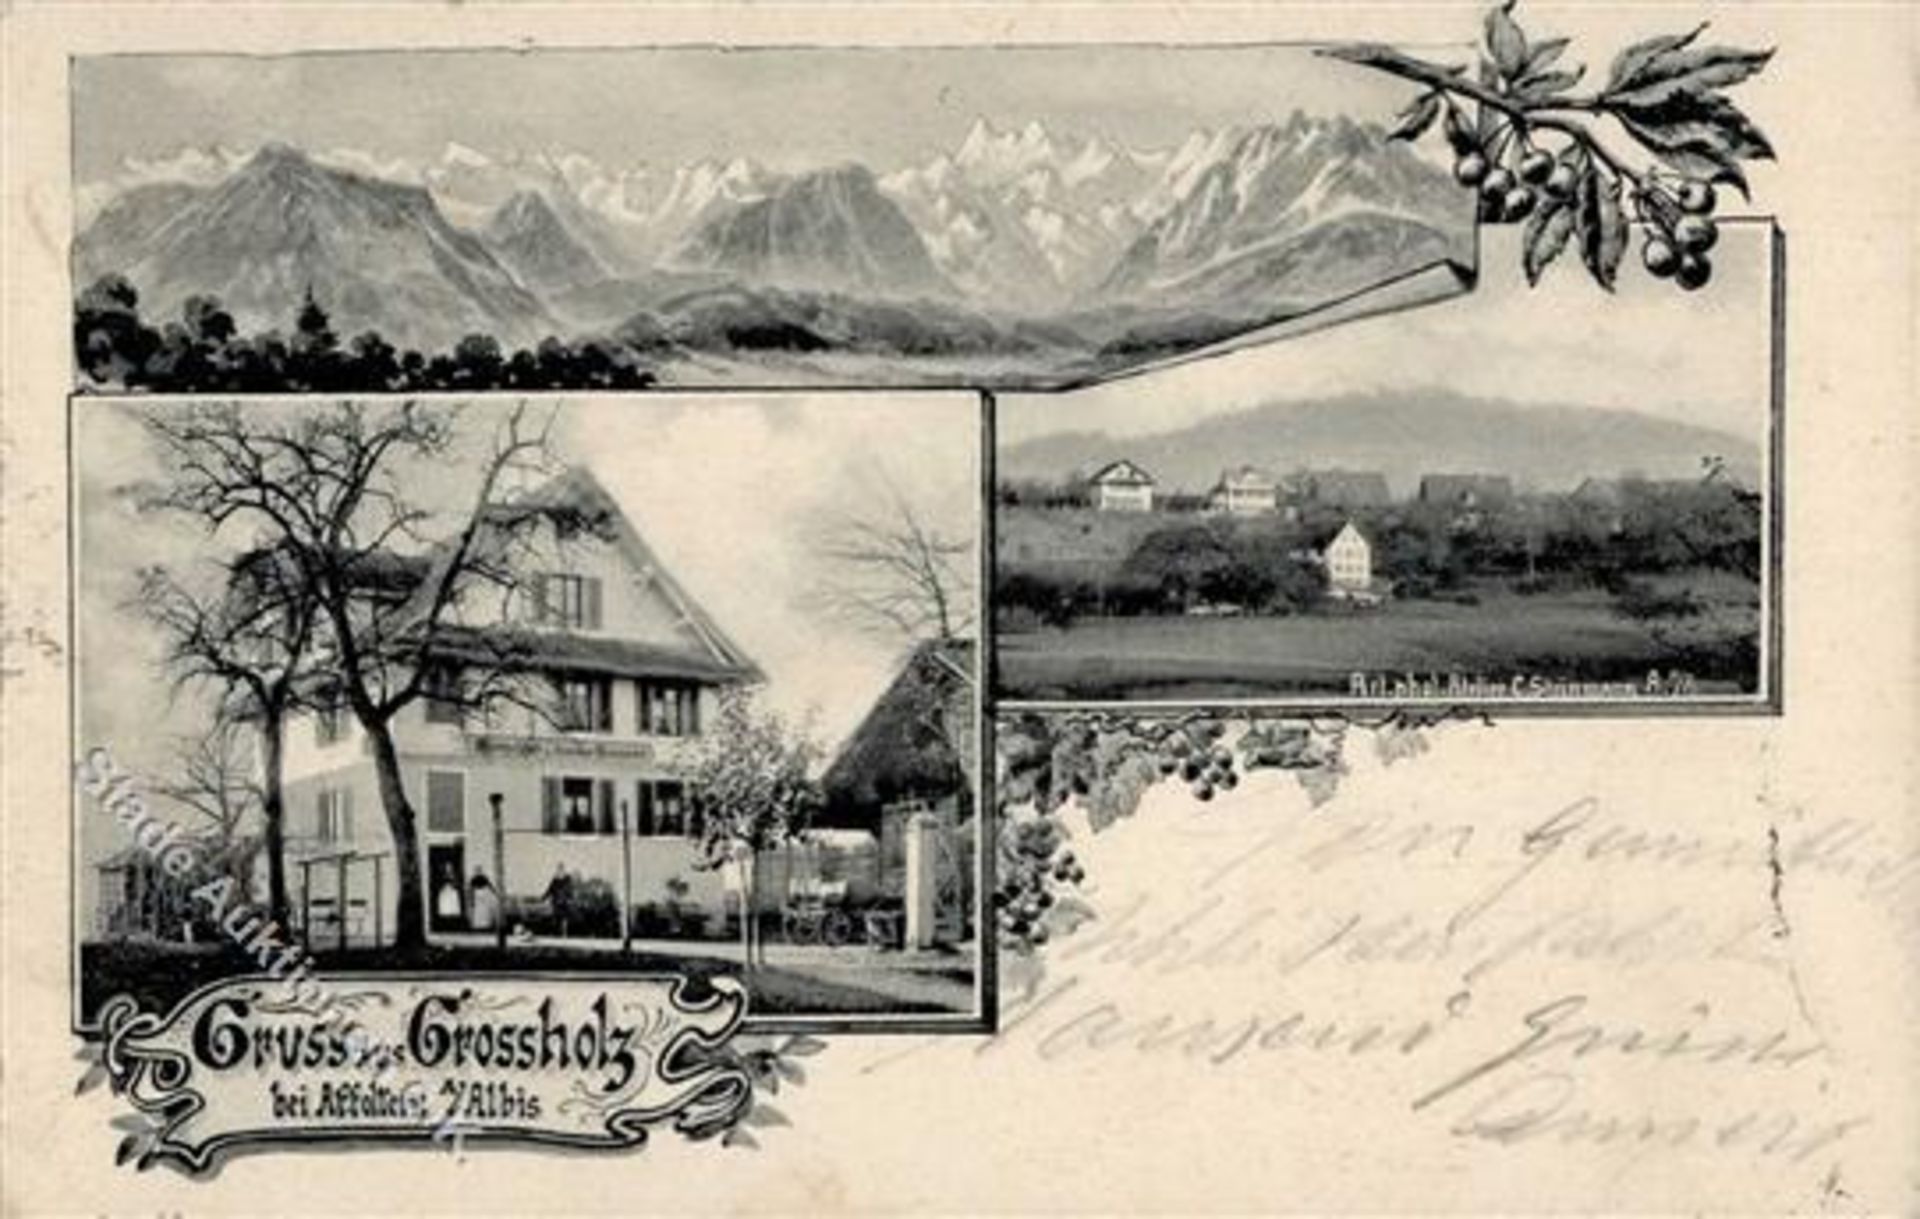 Affoltern am Albis (8910) Schweiz Gasthaus Großholz 1904 I-IIDieses Los wird in einer online-Auktion